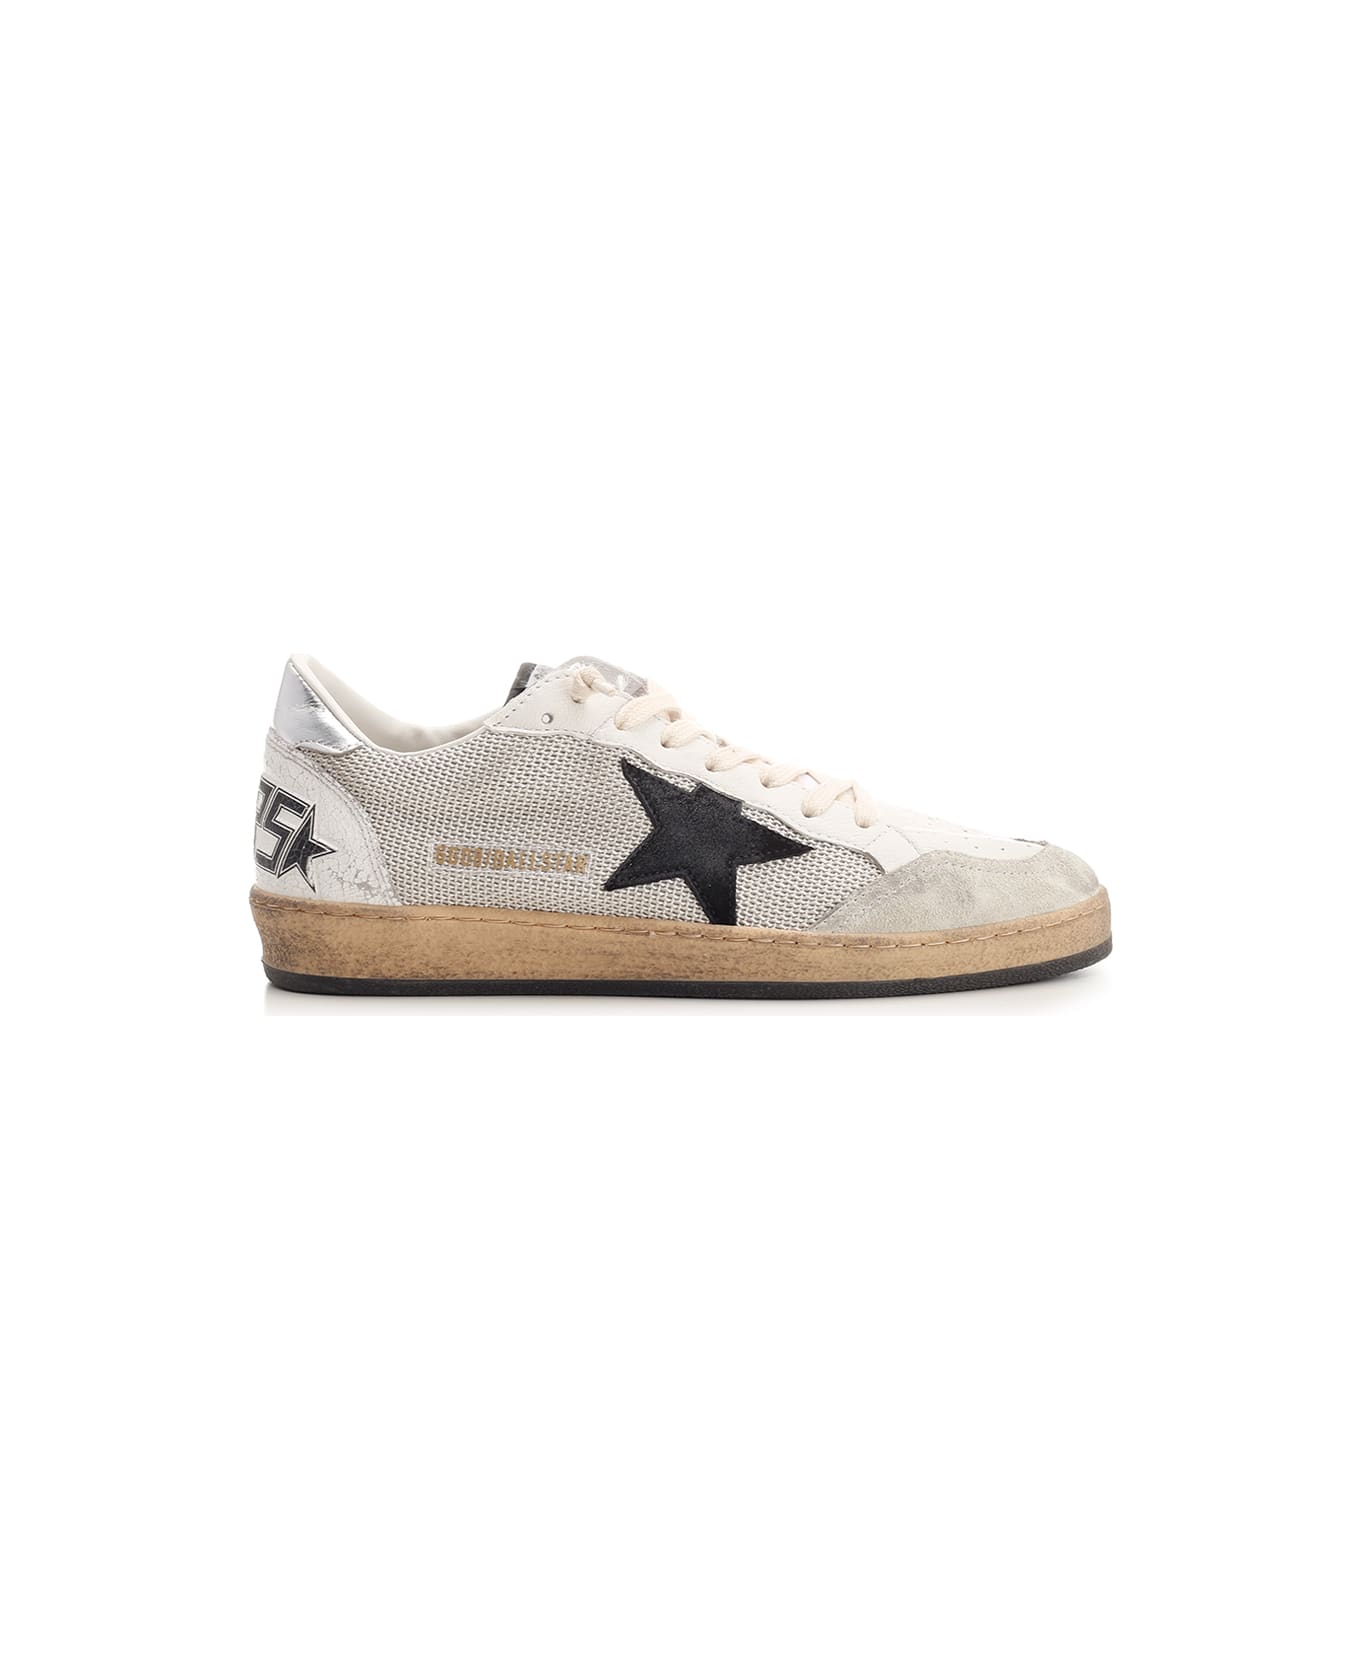 Golden Goose Ball Star Sneakers - Light Silver/Black/White/Silve